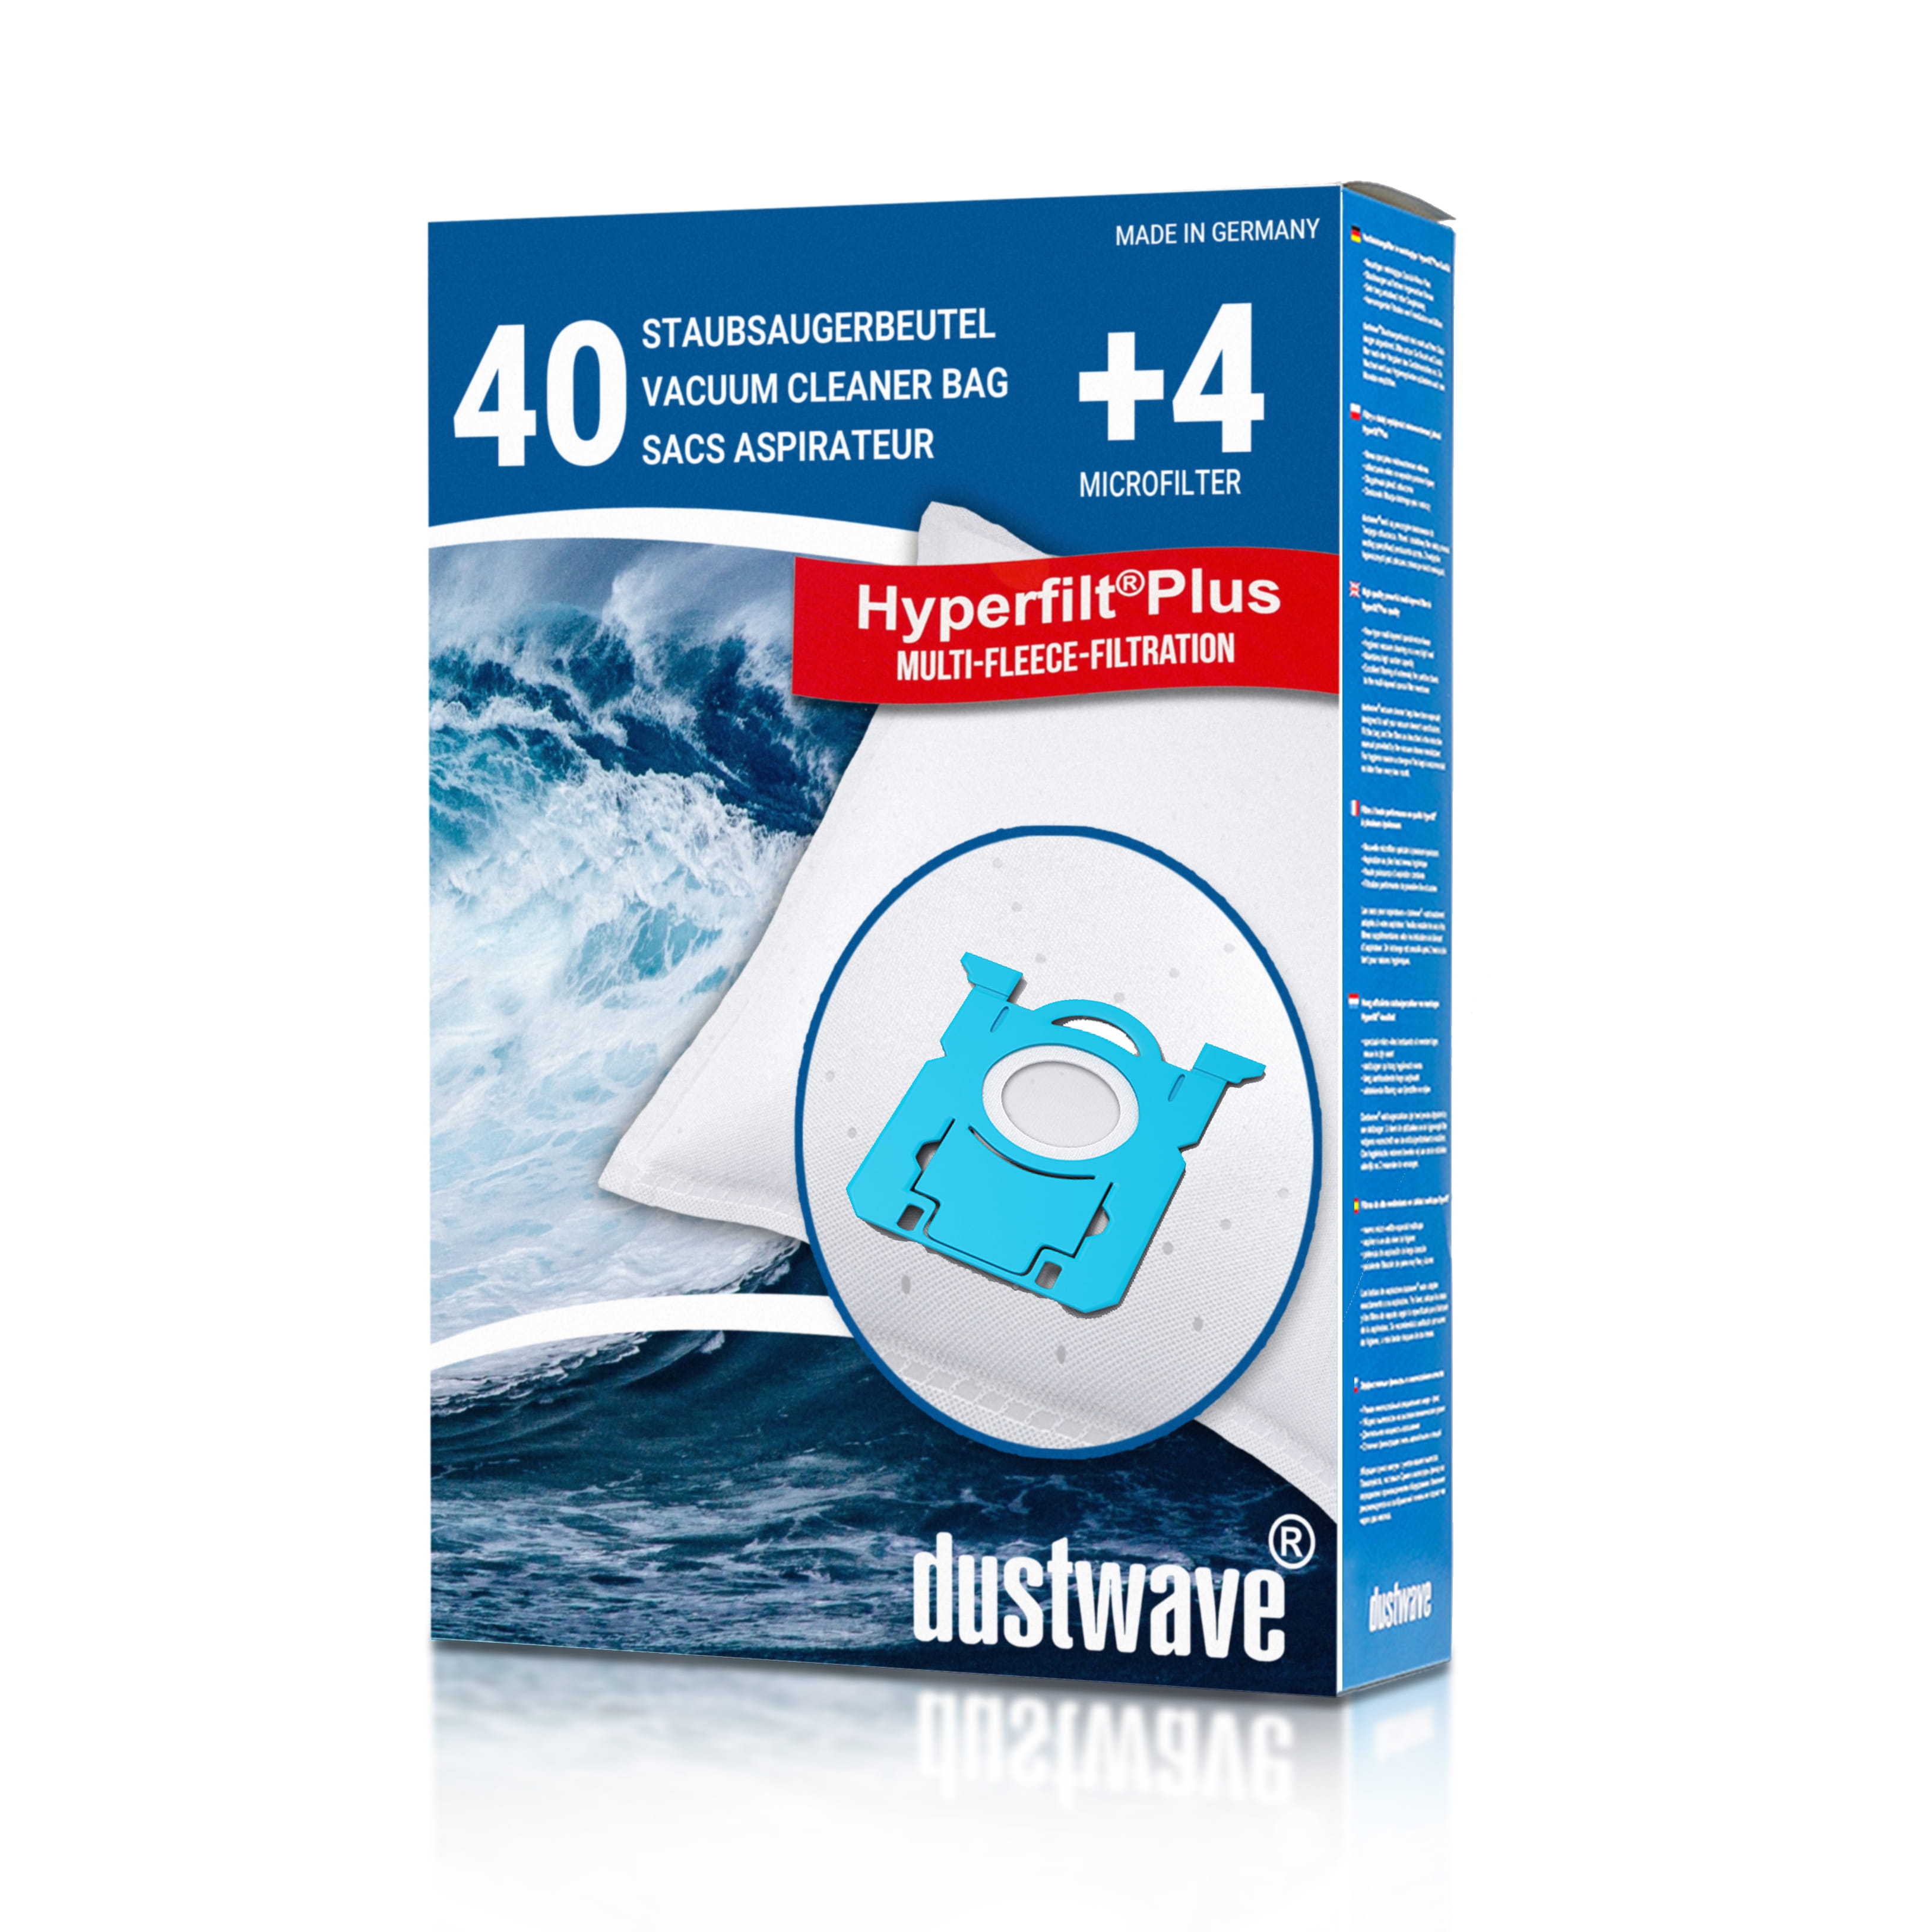 Dustwave® 40 Staubsaugerbeutel für AEG VX8-2-CB-P - hocheffizient, mehrlagiges Mikrovlies mit Hygieneverschluss - Made in Germany